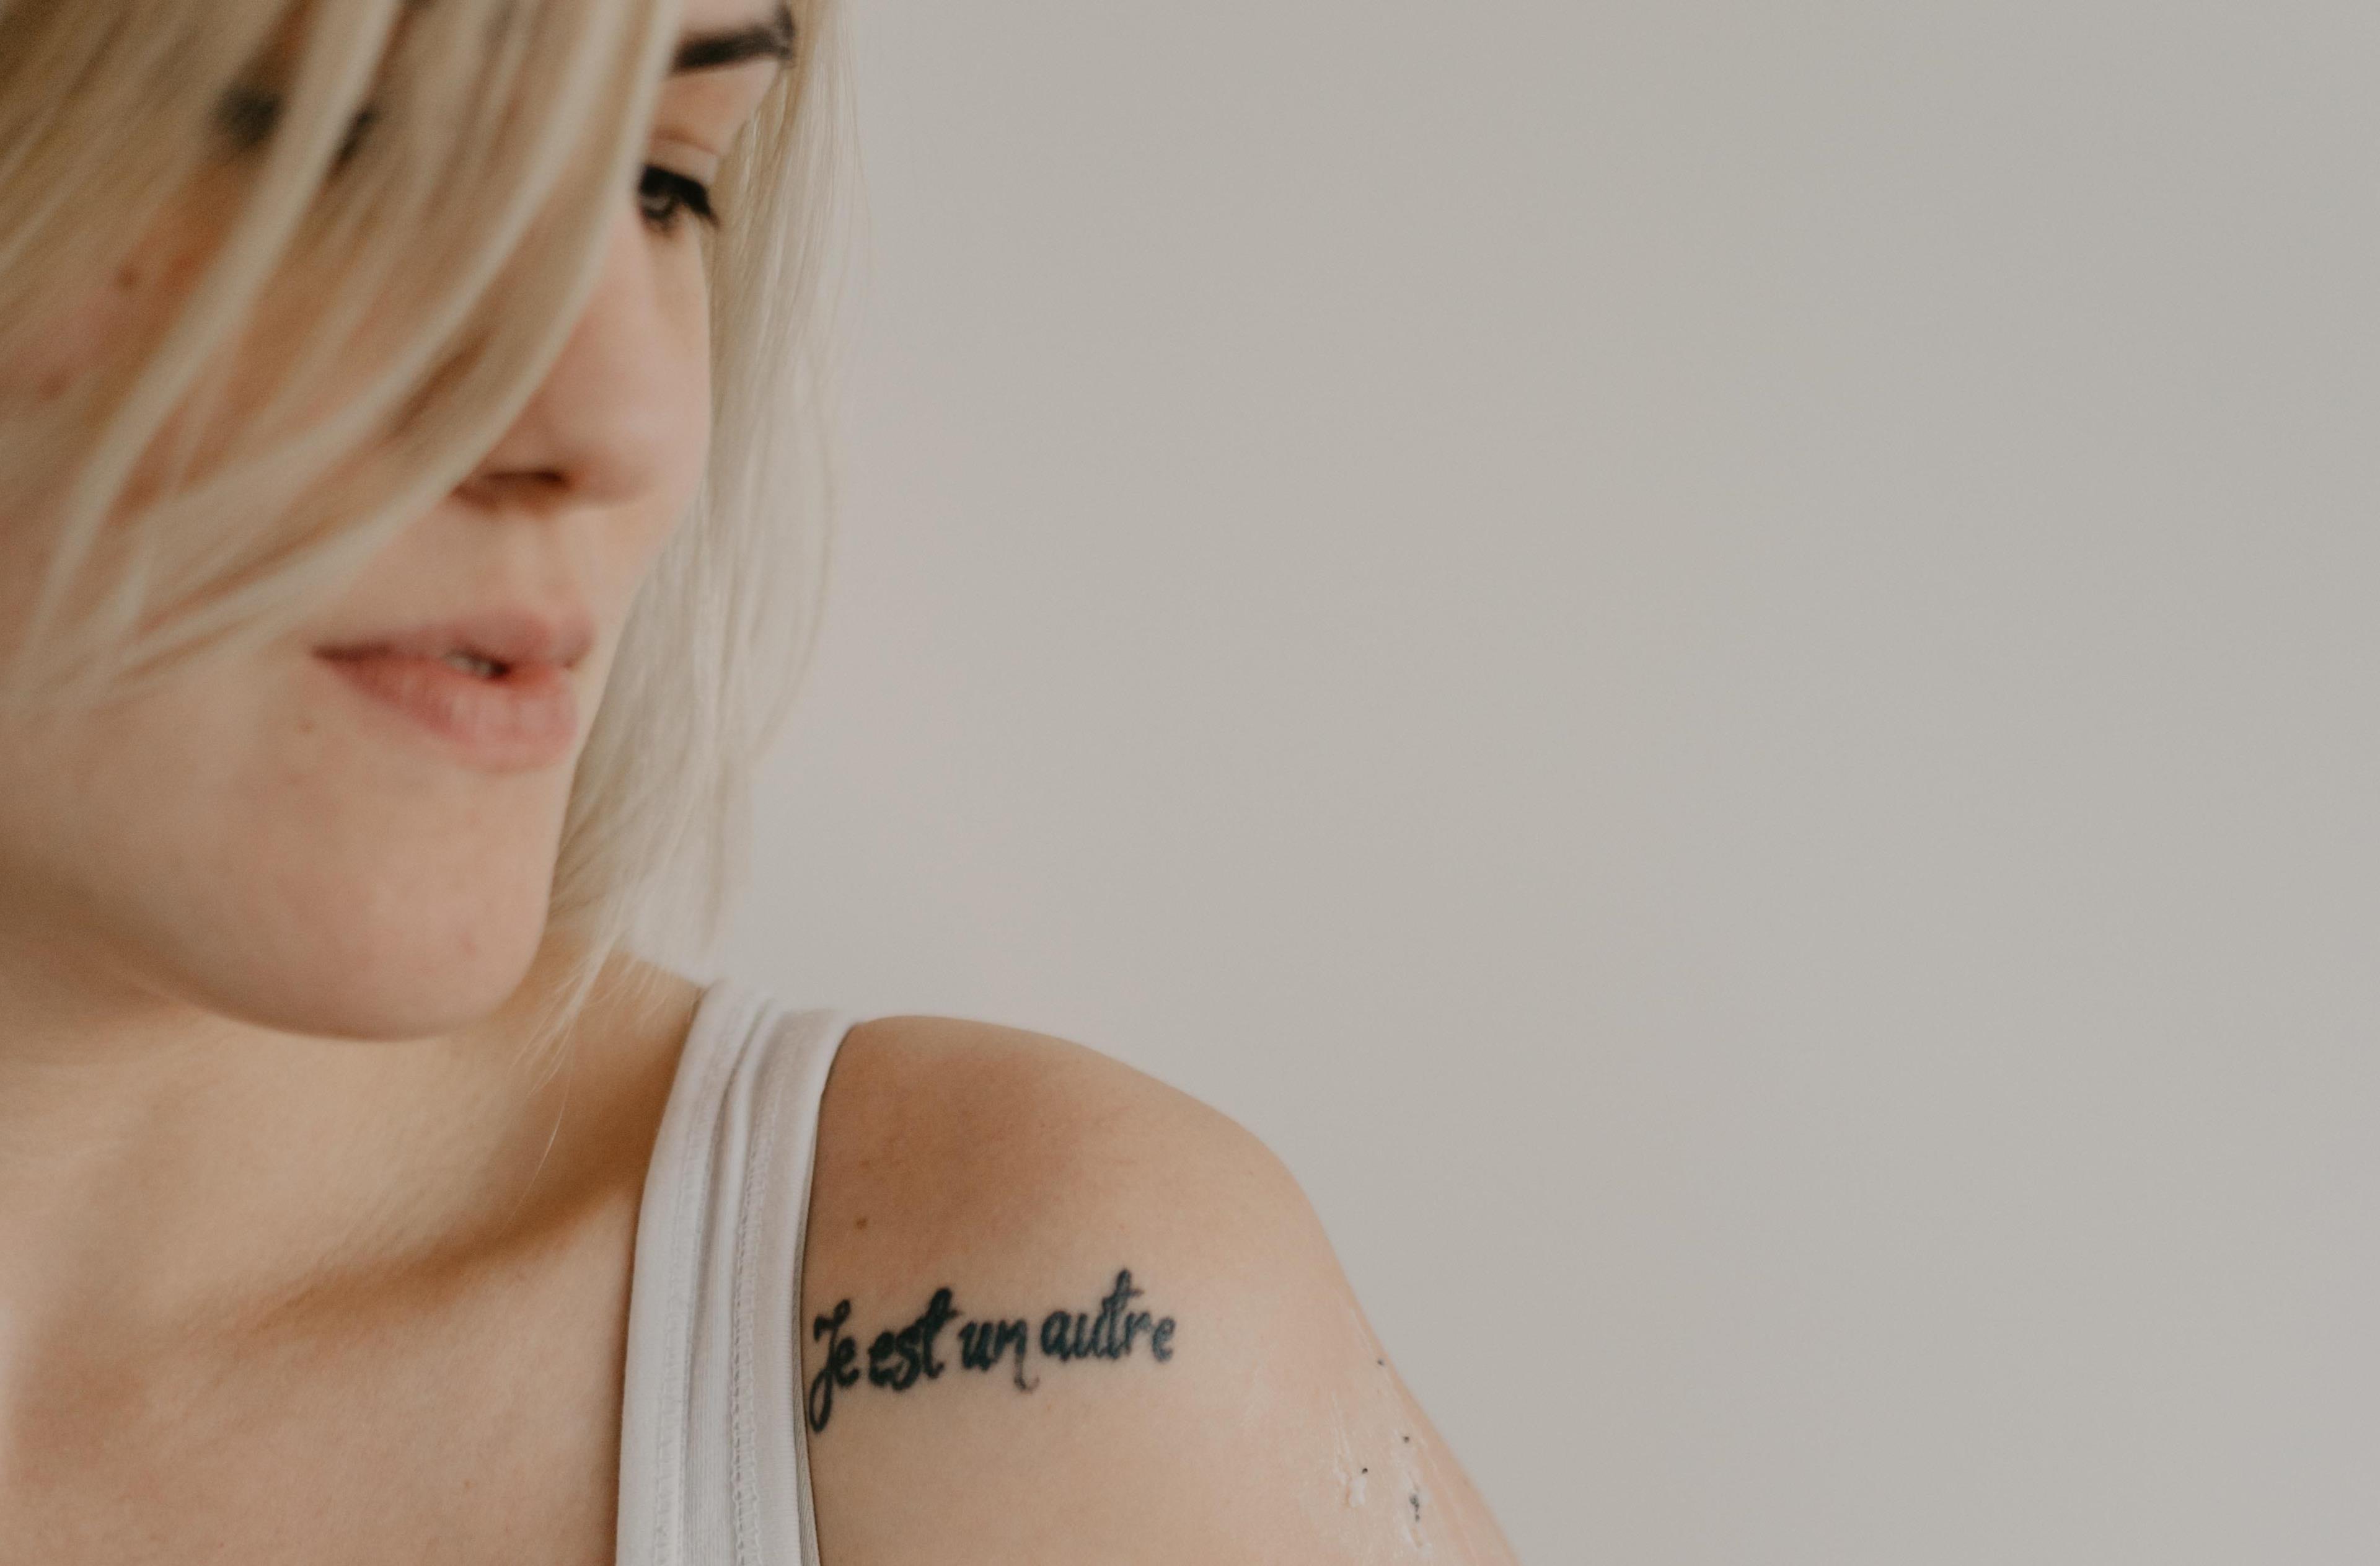 Tatuaggio donna con la frase Je est un autre